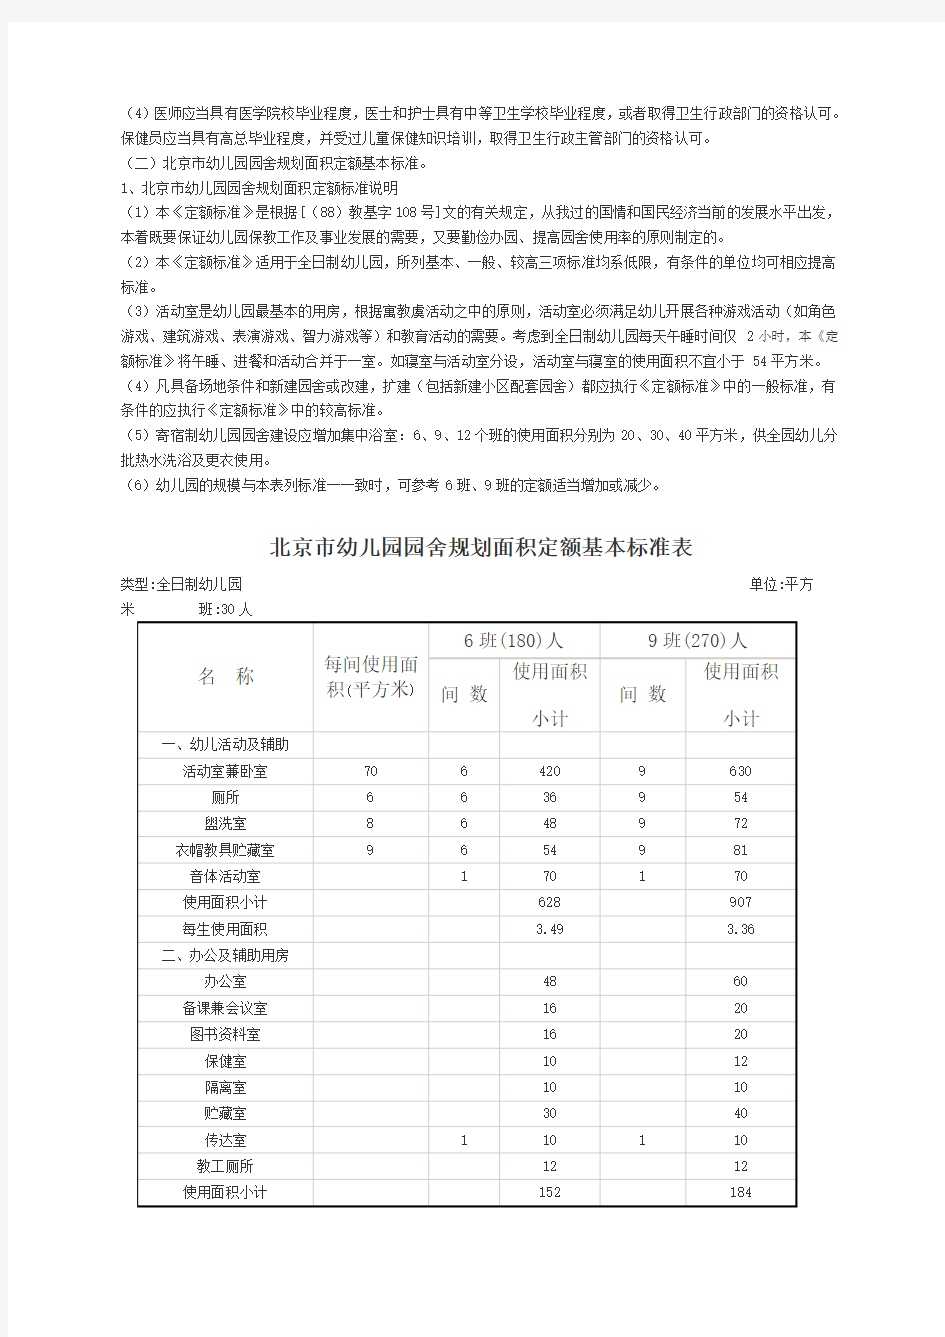 北京市幼儿园办园条件基本标准